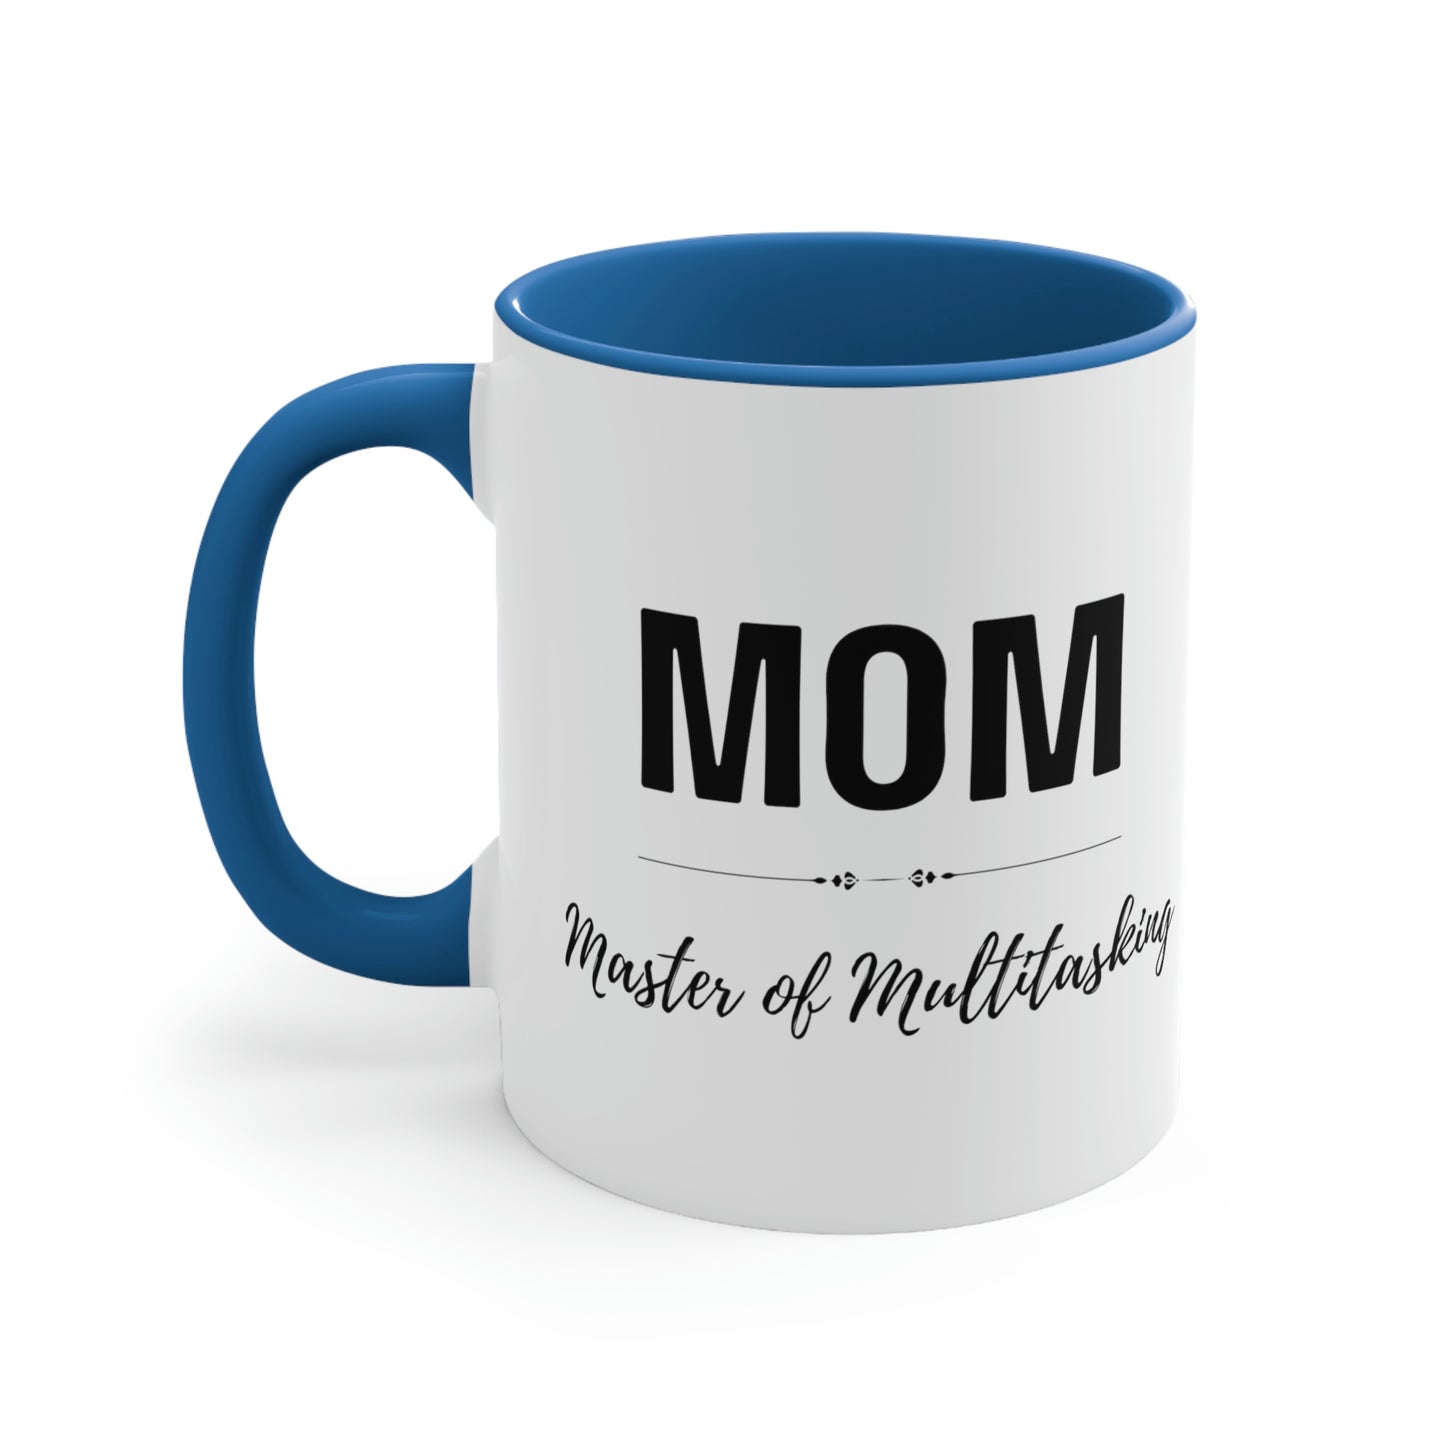 MOM - Master of Multitasking